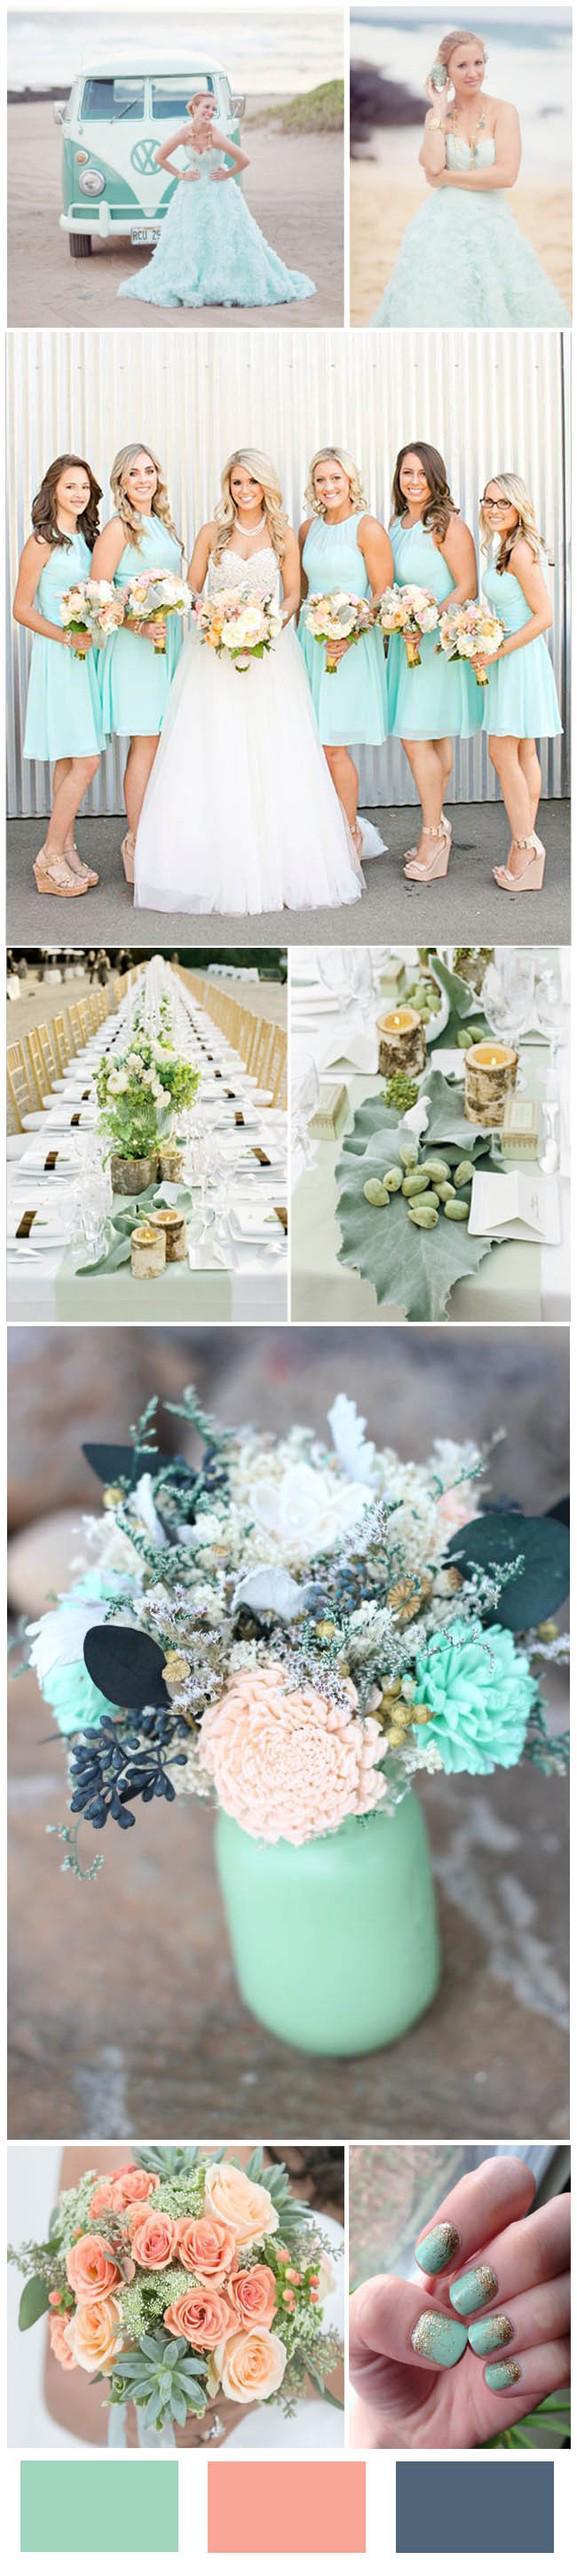 รูปภาพ:http://www.weddinginclude.com/wp-content/uploads/2016/05/Mint-Wedding-Color-Ideas-For-the-Bride-to-Be.jpg